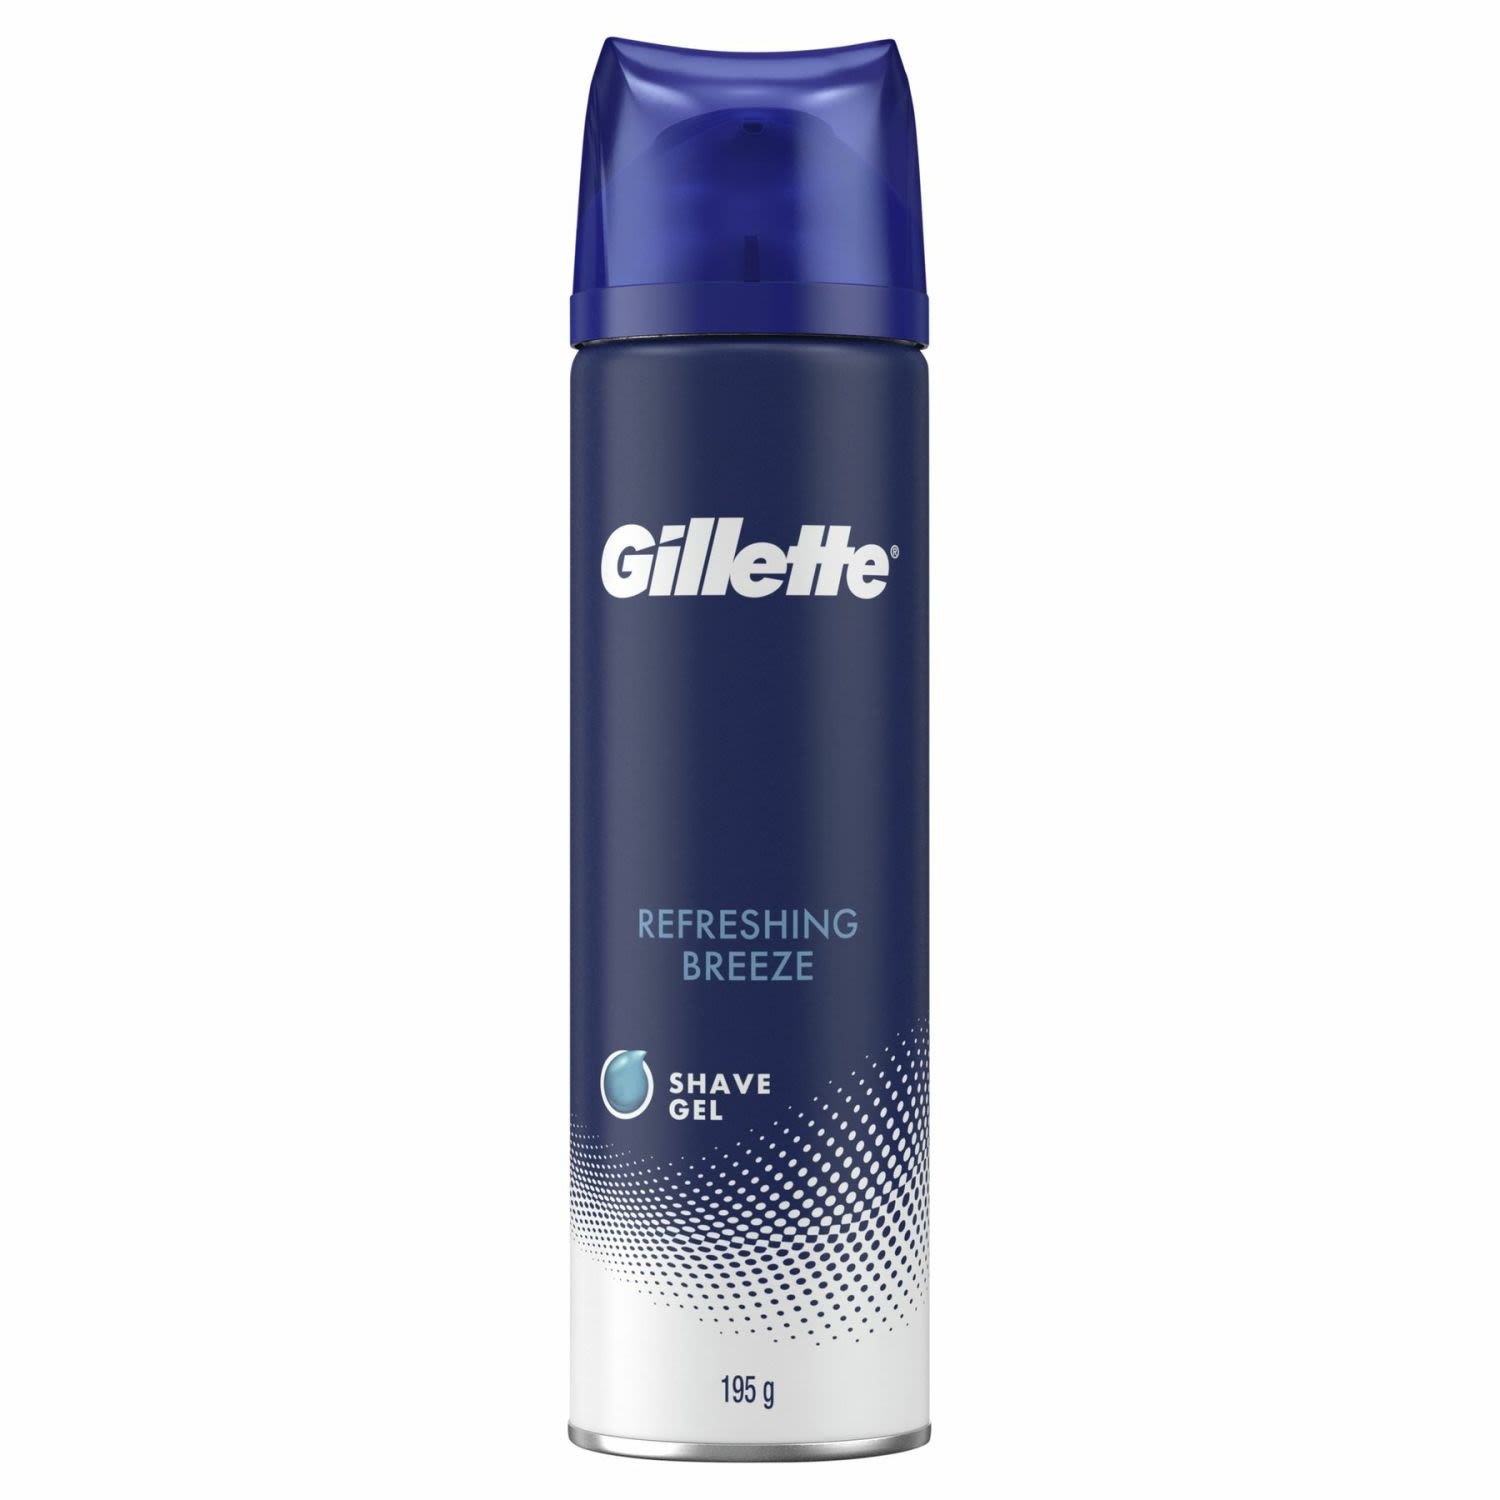 Gillette Refreshing Breeze Shave Gel, 195 Gram